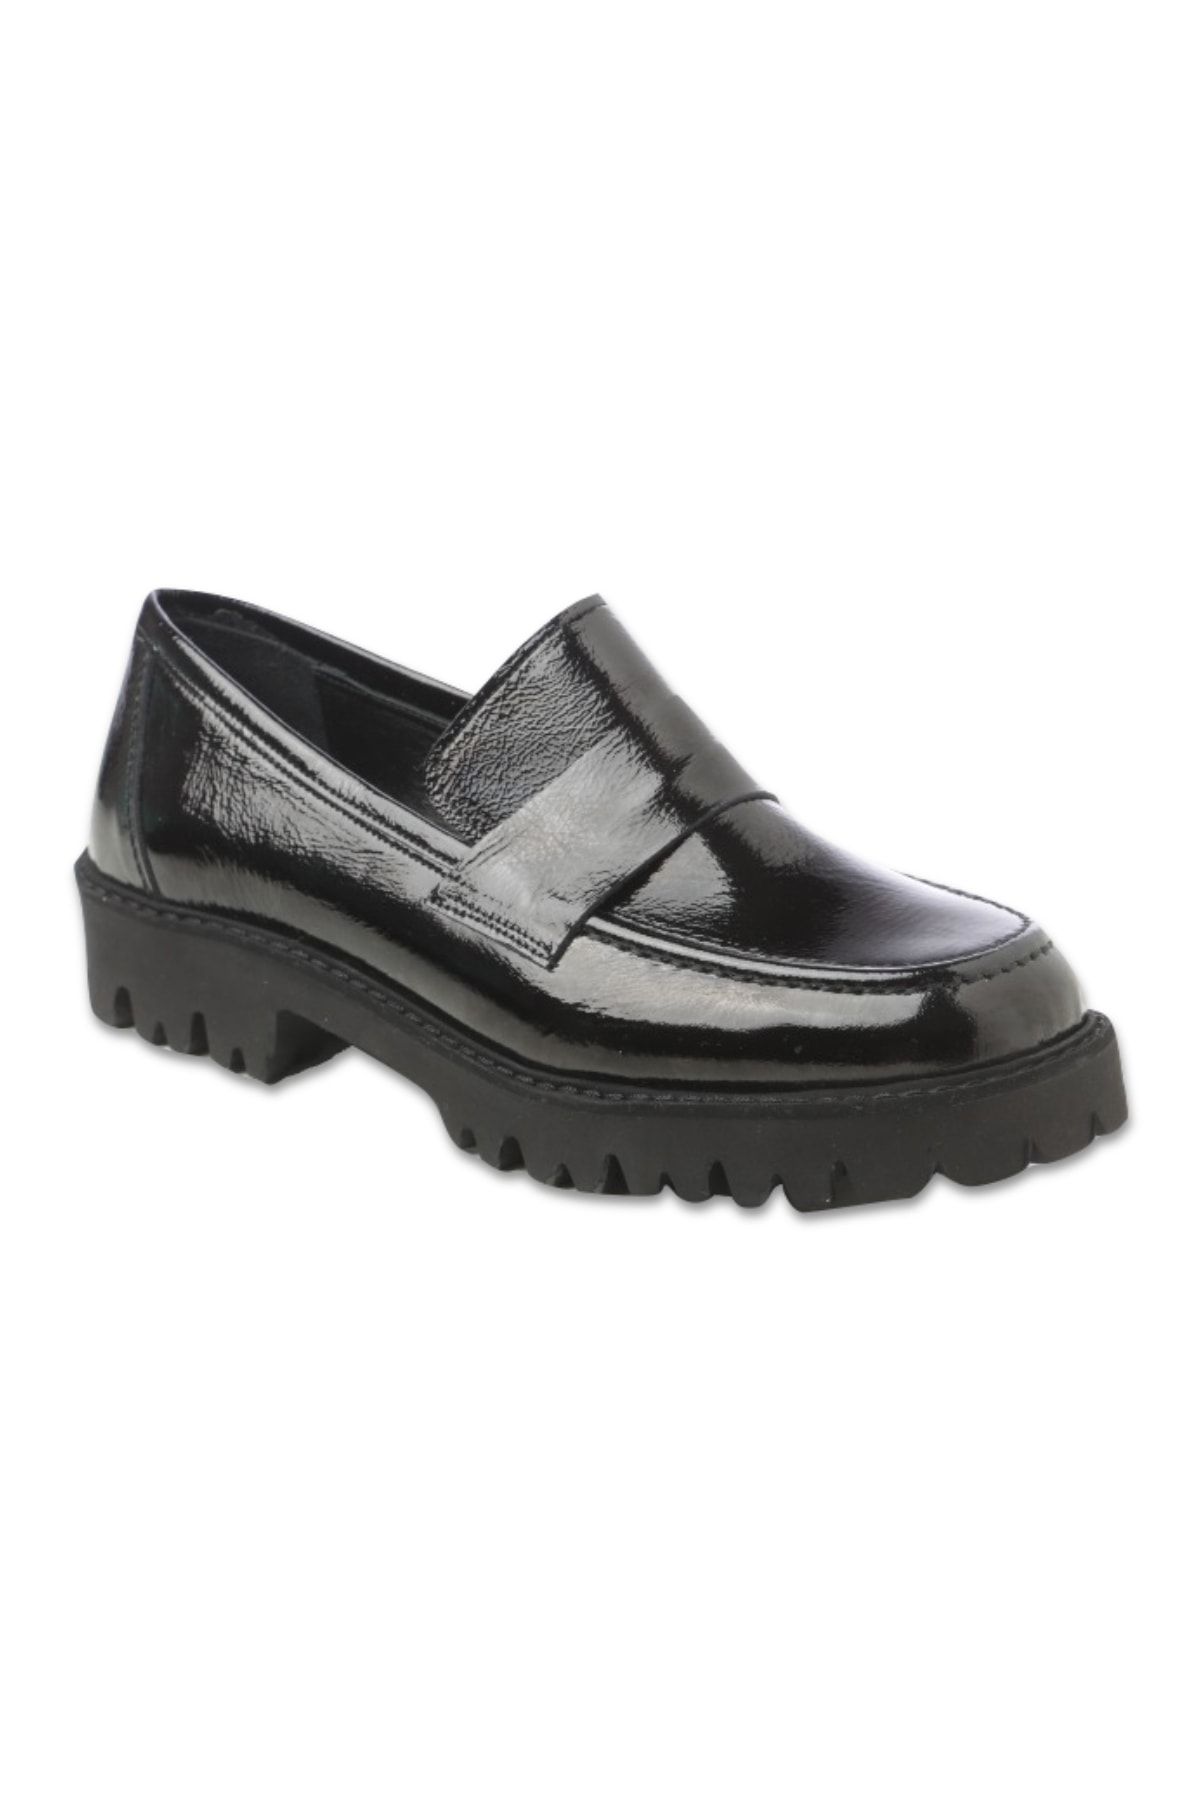 Giuseppe Mengoni Kadın Oxford/ayakkabı Mx-m.22541 Zl Oxford Siyah Kırık Rugan(r839)